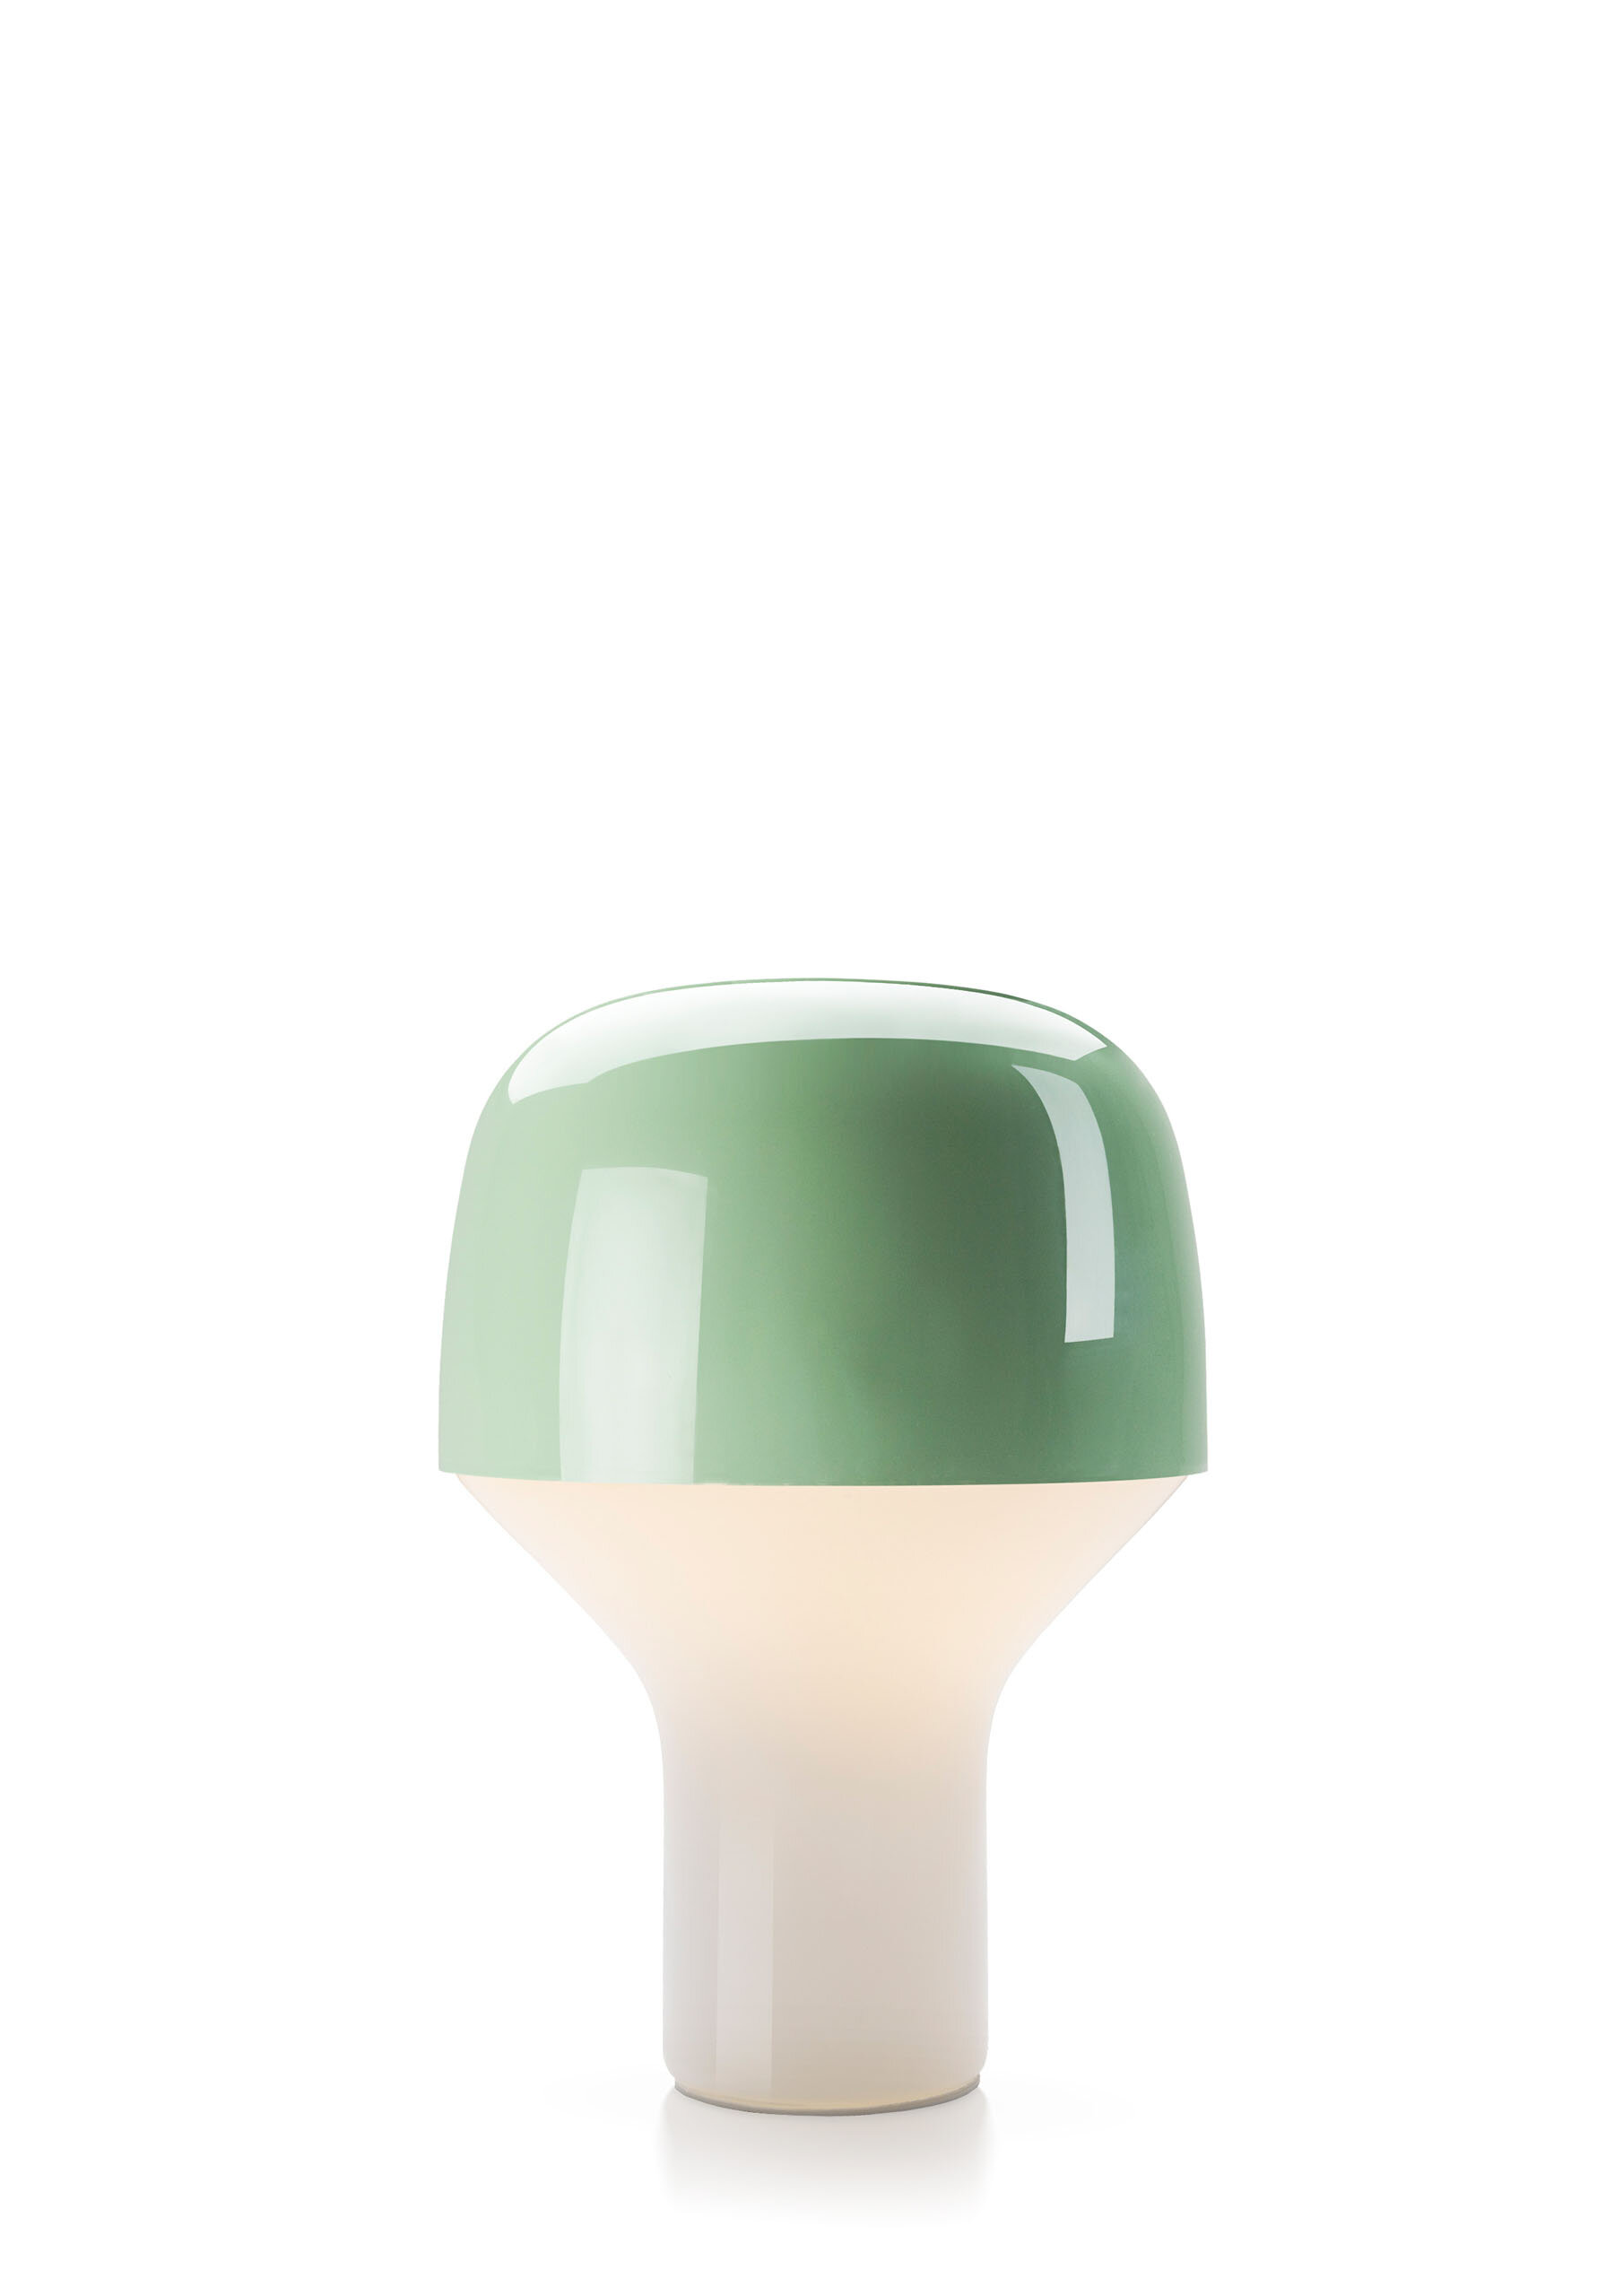 teo-cap-table-lamp-green-cutout.jpg